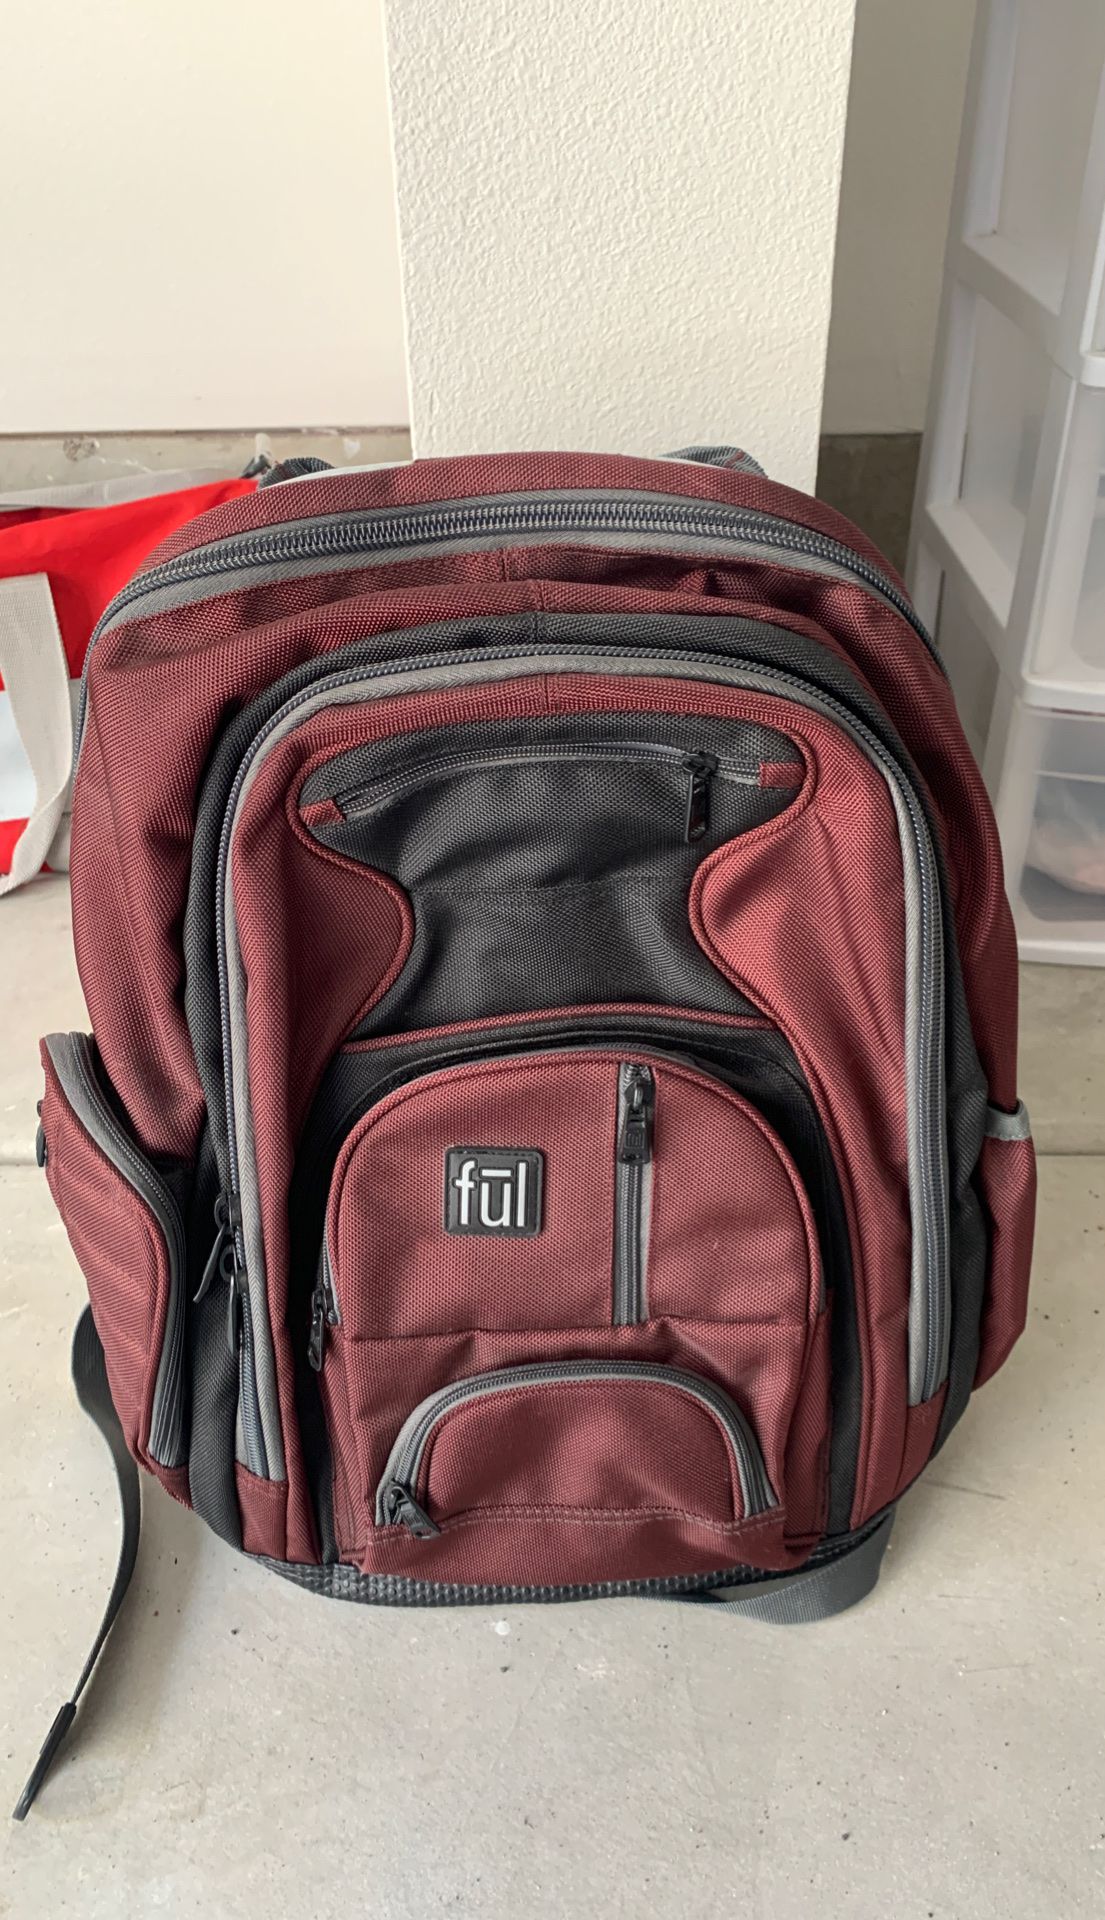 FUL backpack